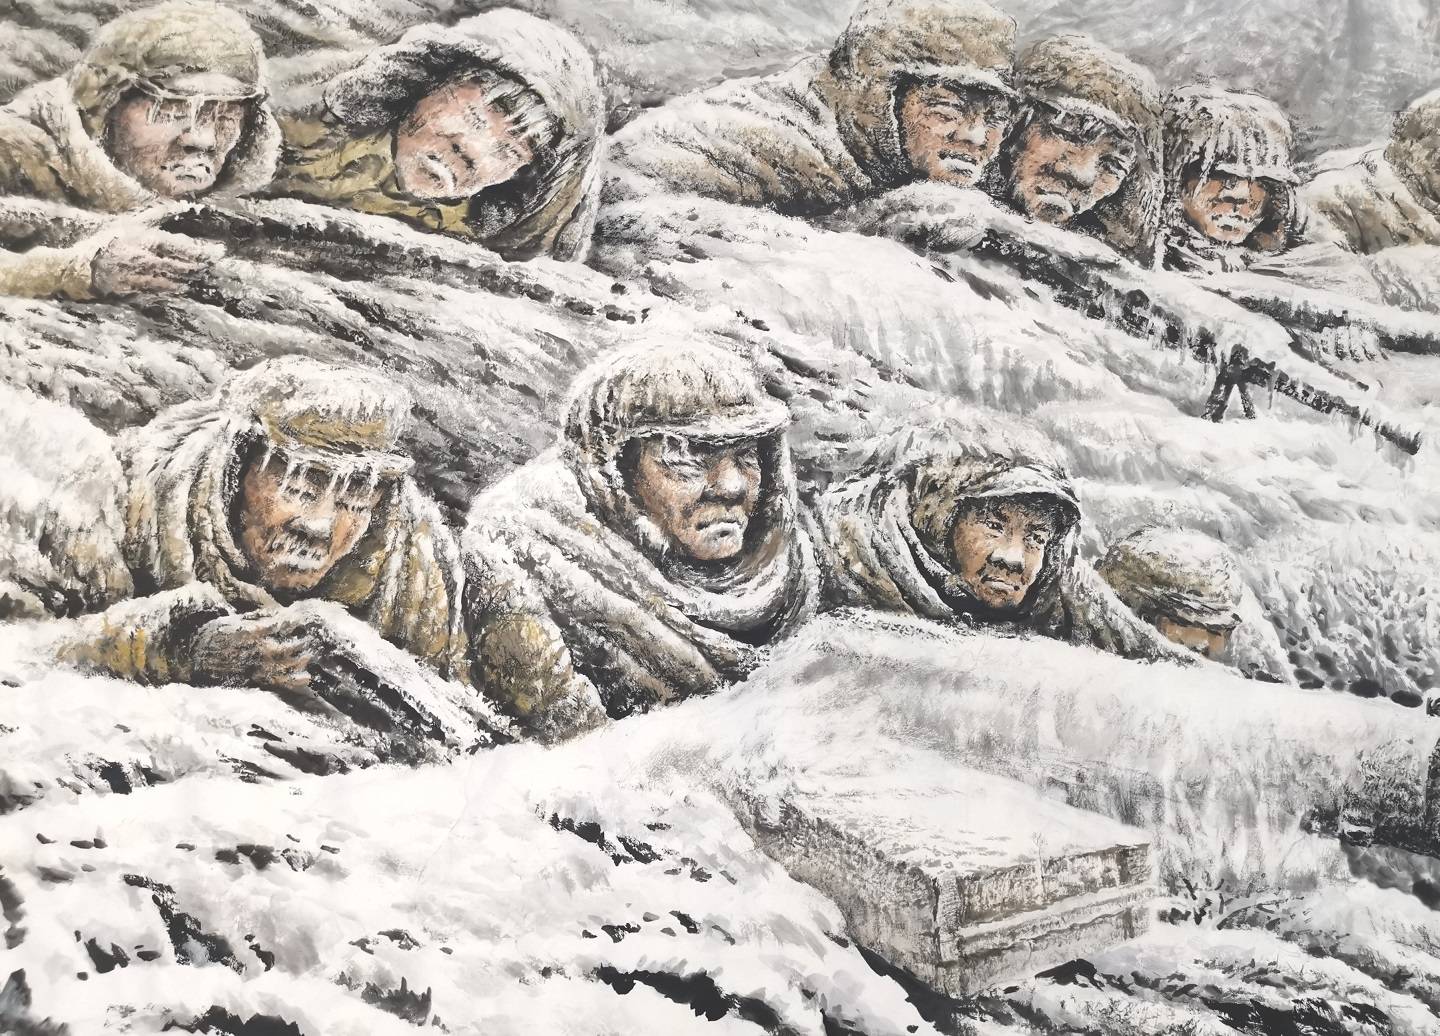 满怀深情地创作了这幅让人肃然起敬的《冰雕连》作品,这些军人中有